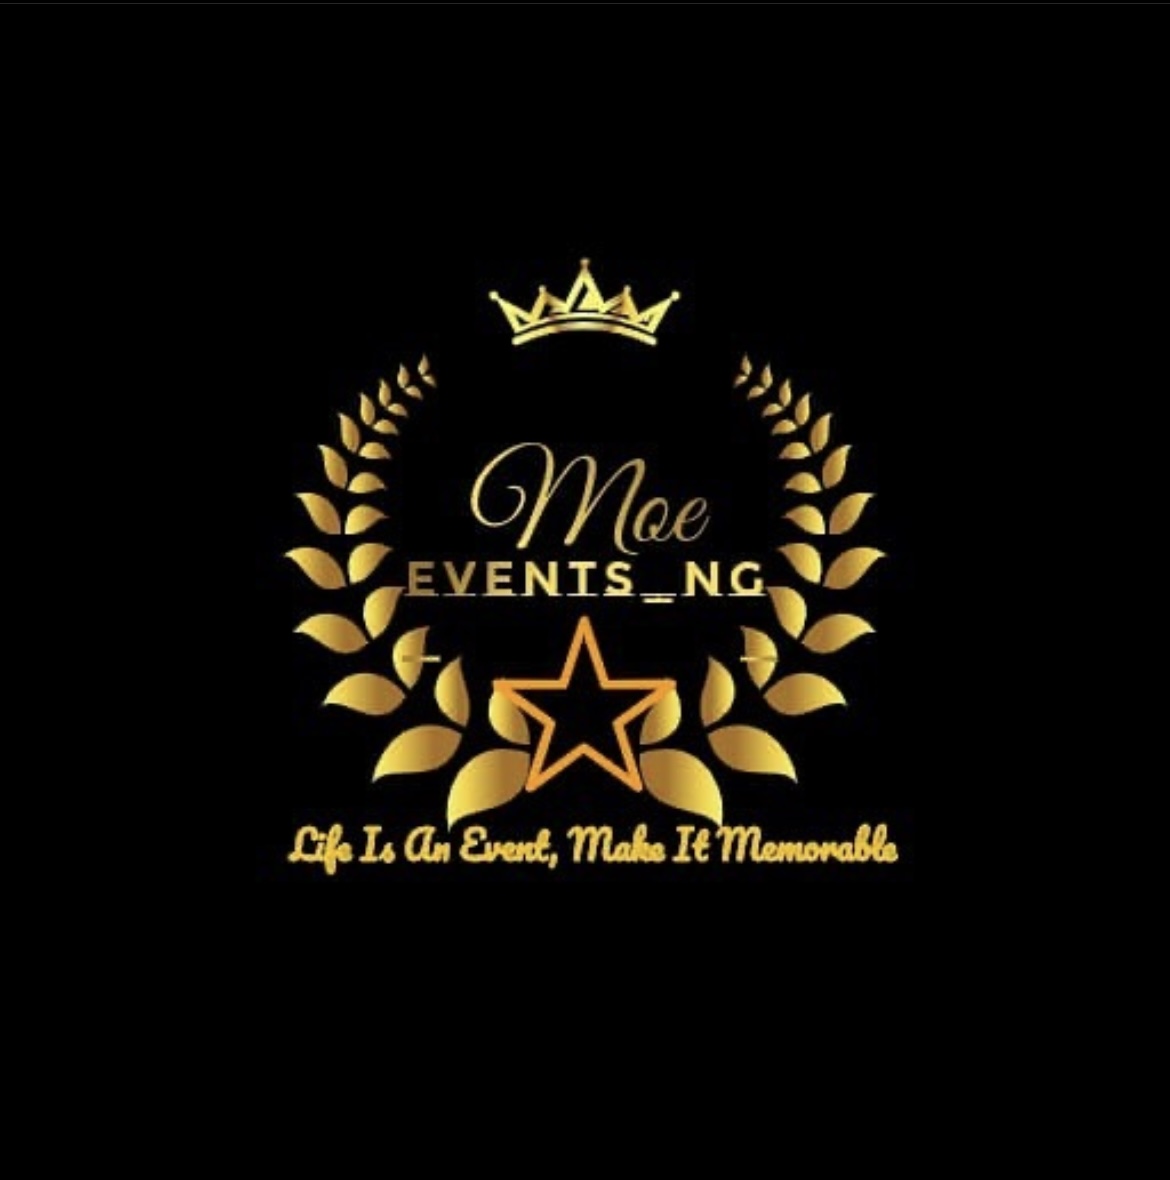 Moe_events_ng provider